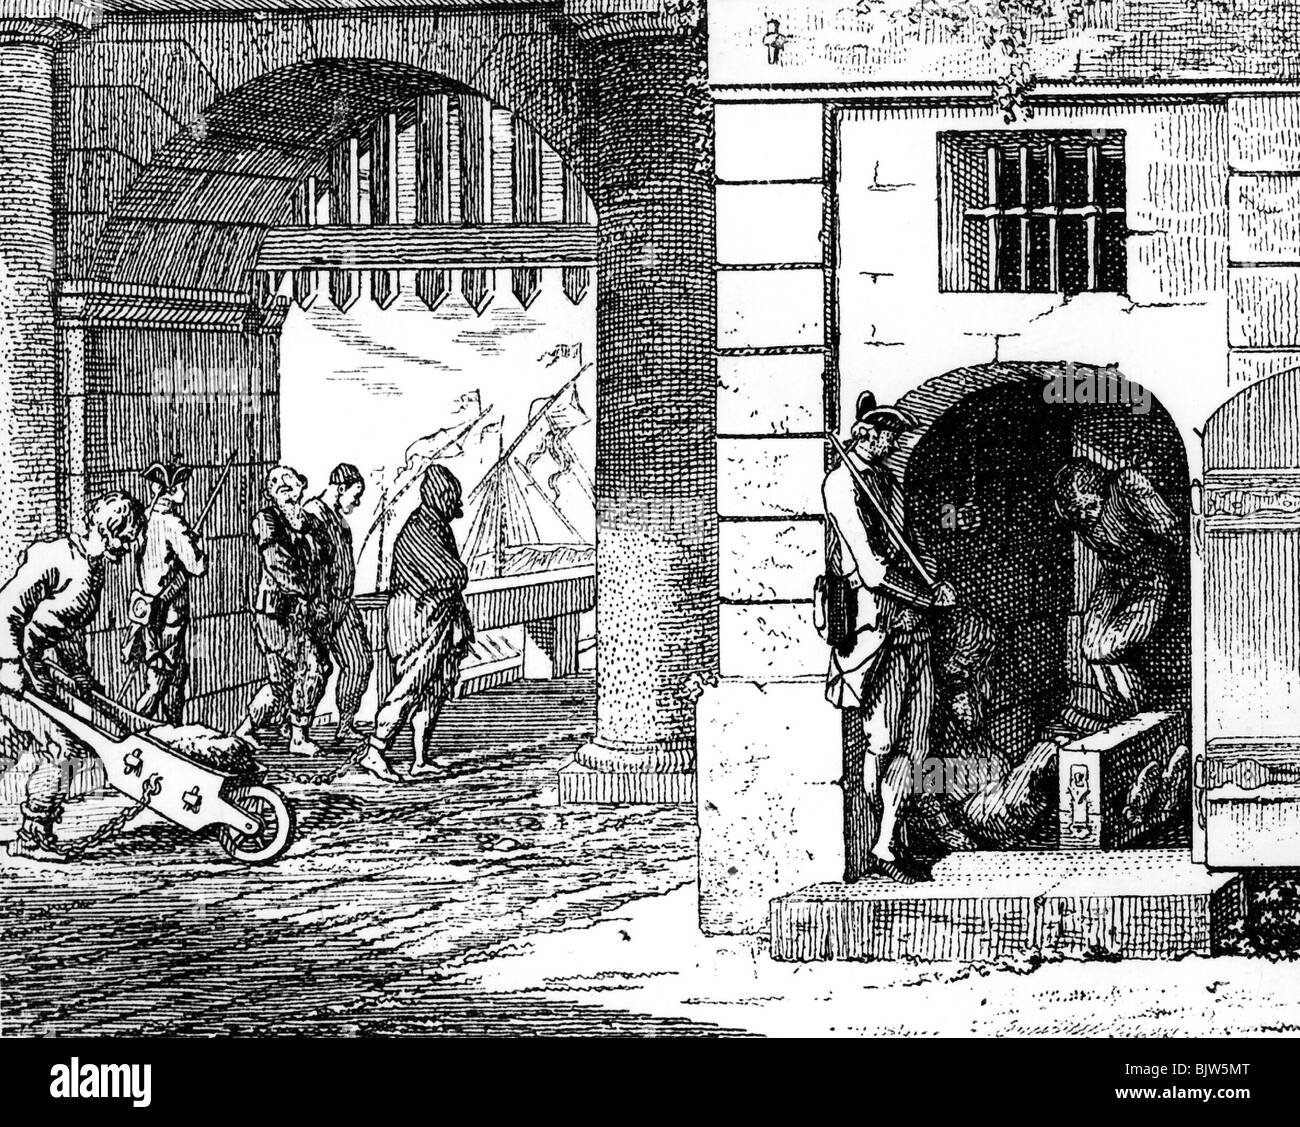 Giustizia, sistema penitenziario, sanzioni nel 18th secolo, cucina, carrello e Stockhaus, incisione di D. Chodowiecki, 1770, Foto Stock